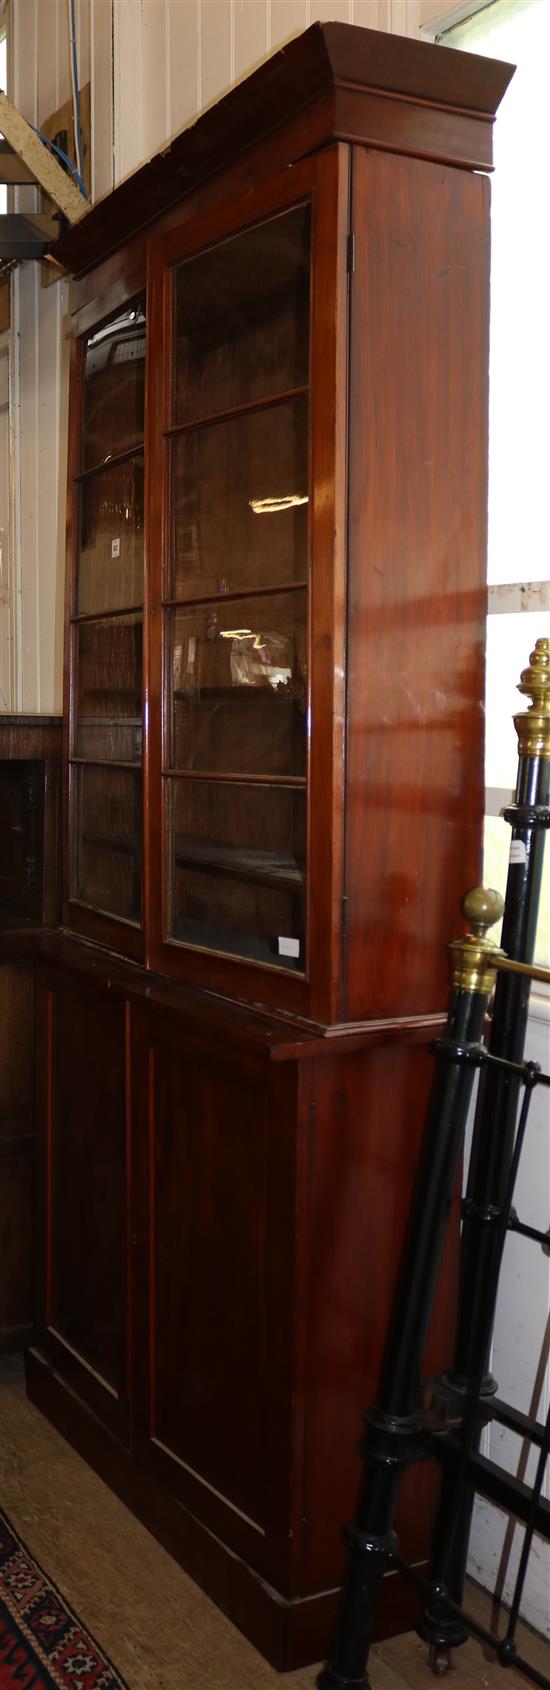 Early 19th century mahogany bookcase cupboard(-)